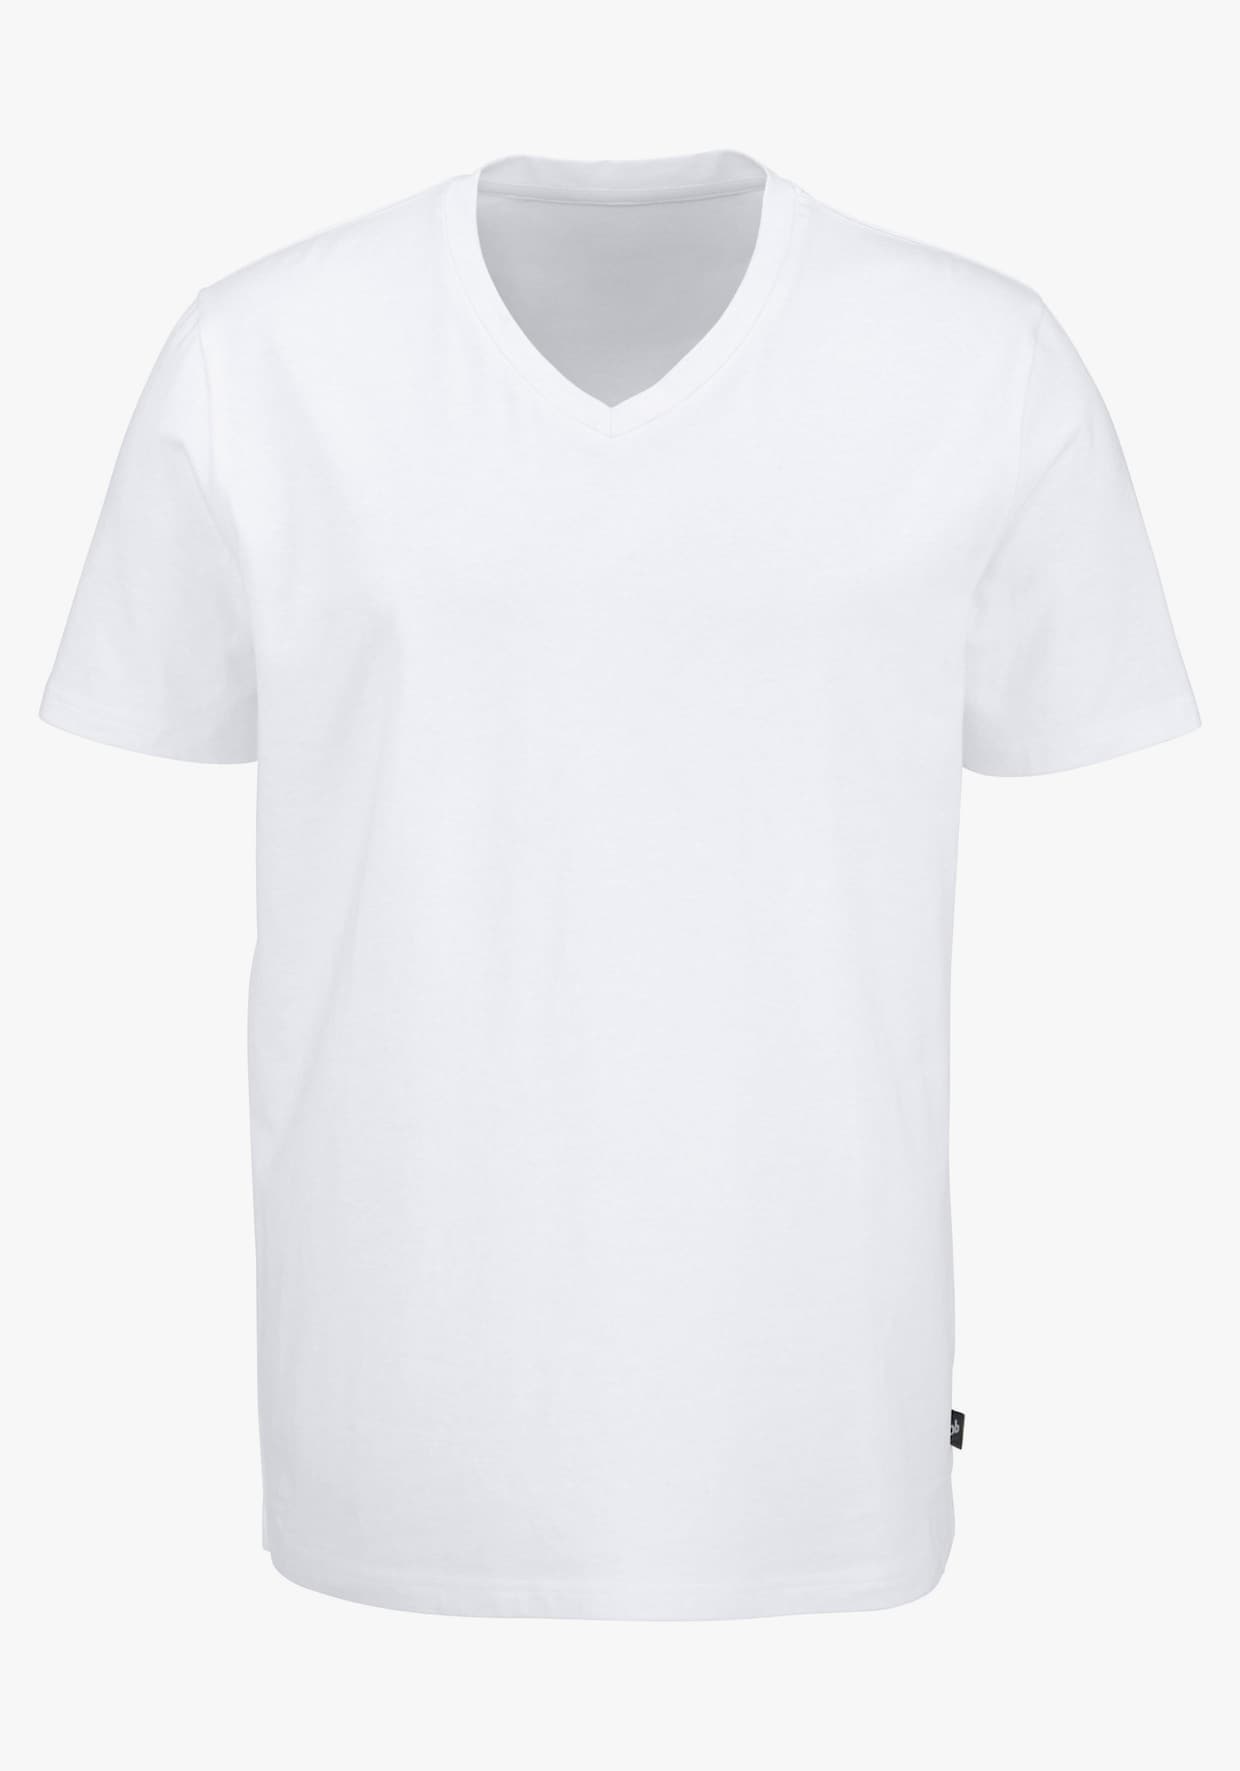 Bruno Banani T-Shirt - schwarz, weiß, grau-meliert